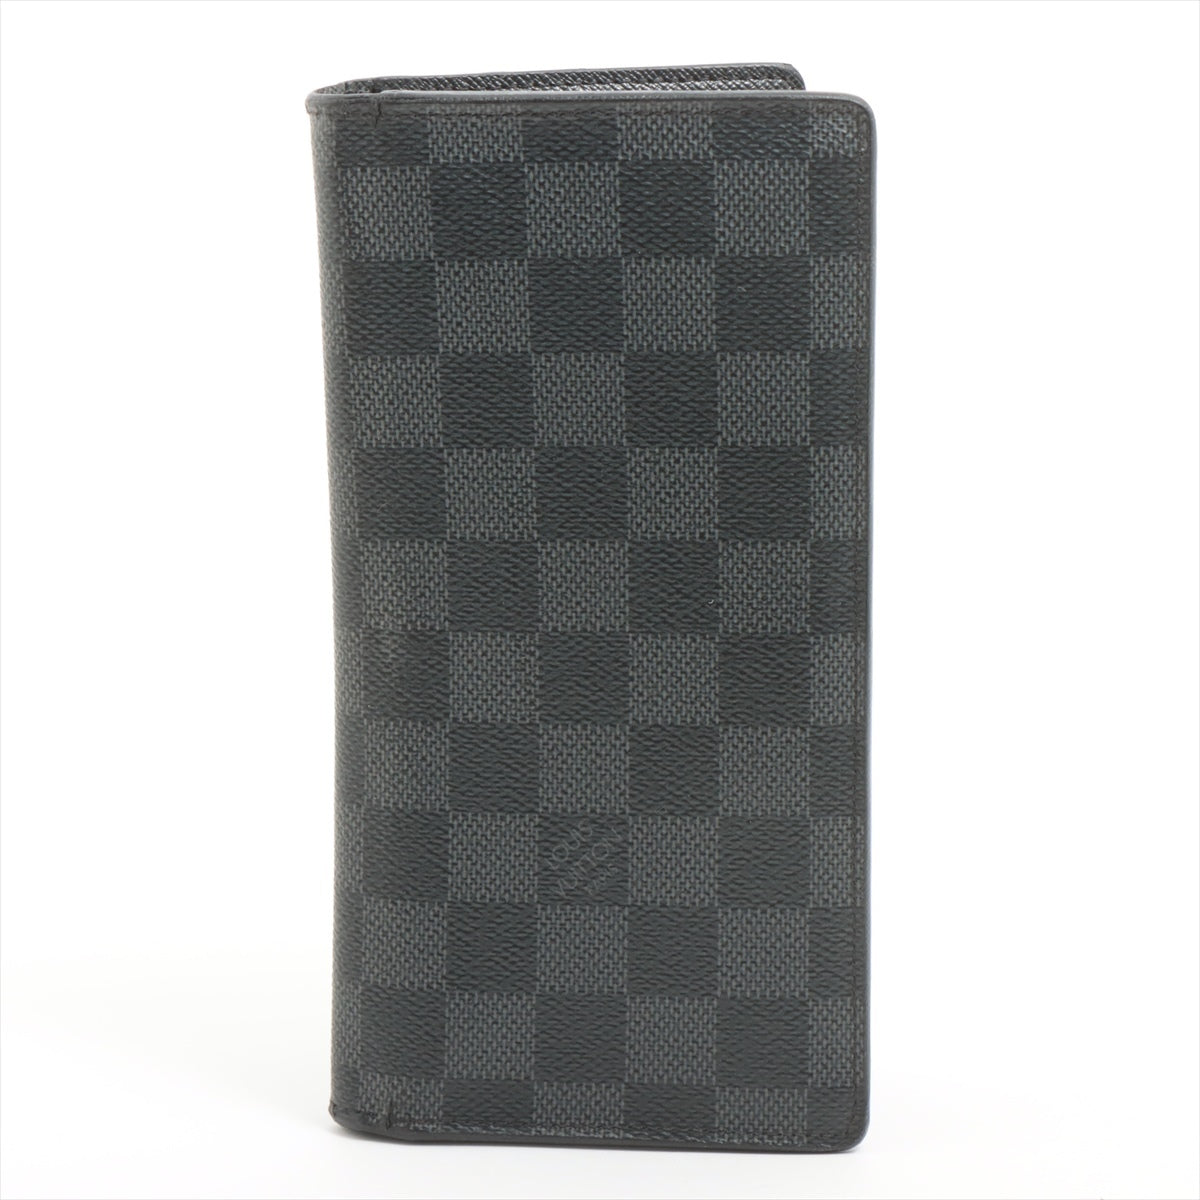 ルイヴィトン ダミエ･グラフィット ポルトフォイユブラザ N62665 ブラック 財布